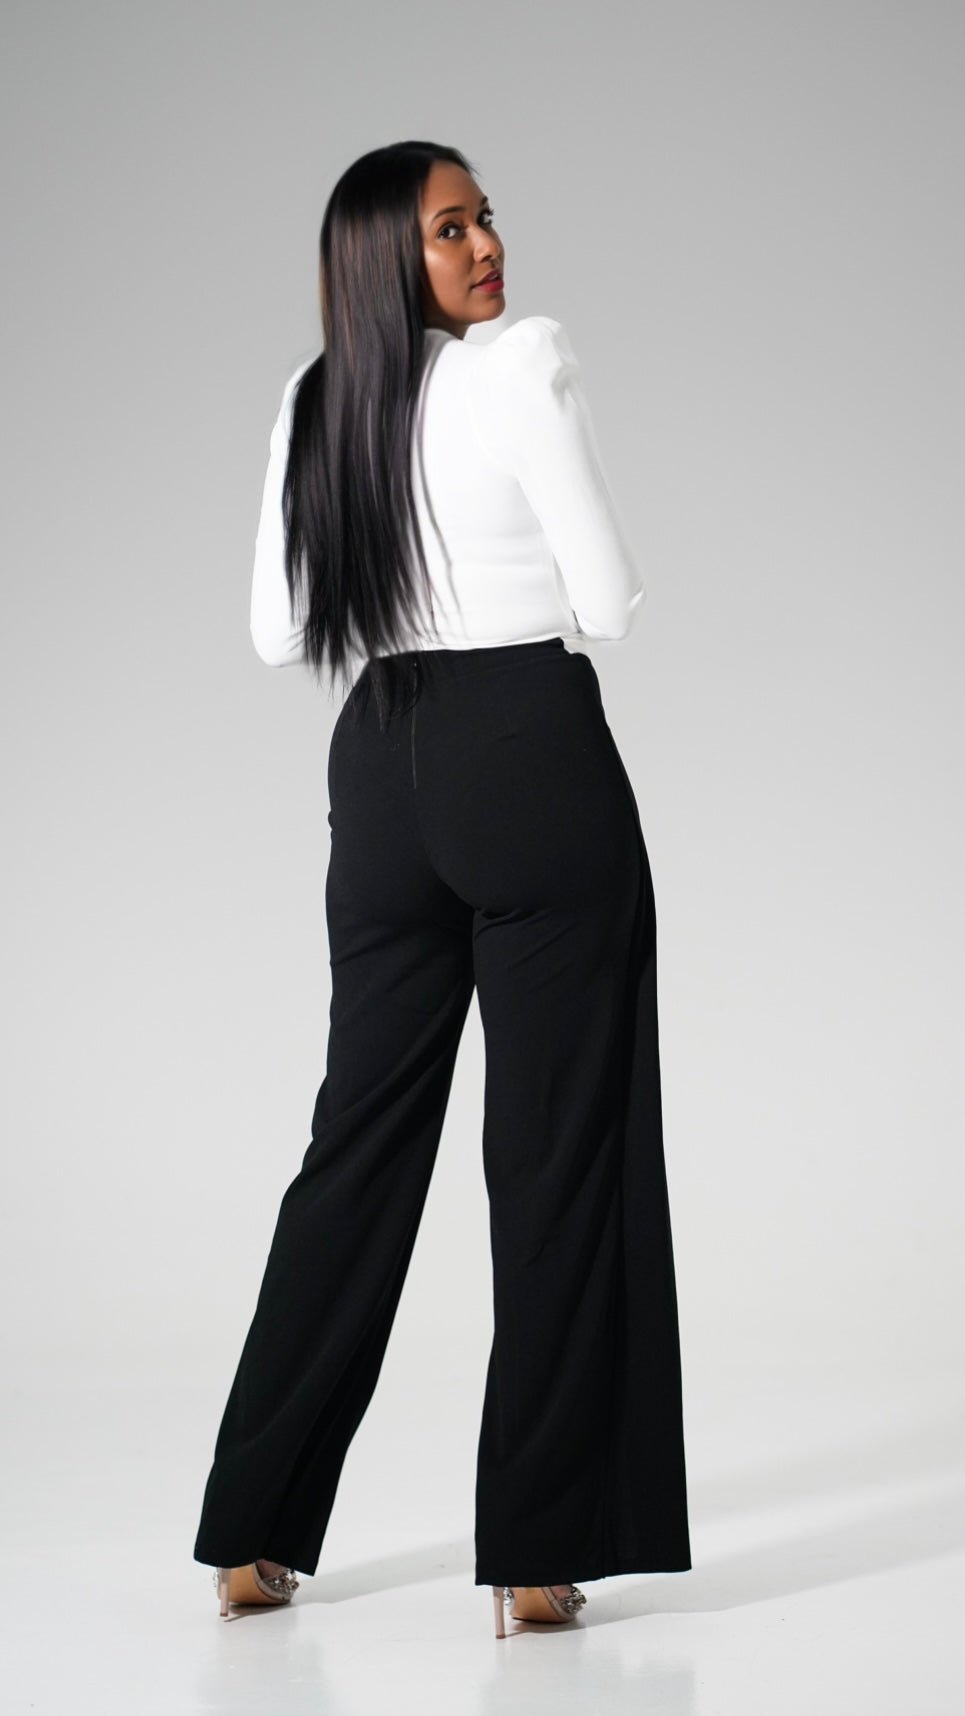 Black & White Asymmetrical Pant - Very Ashley